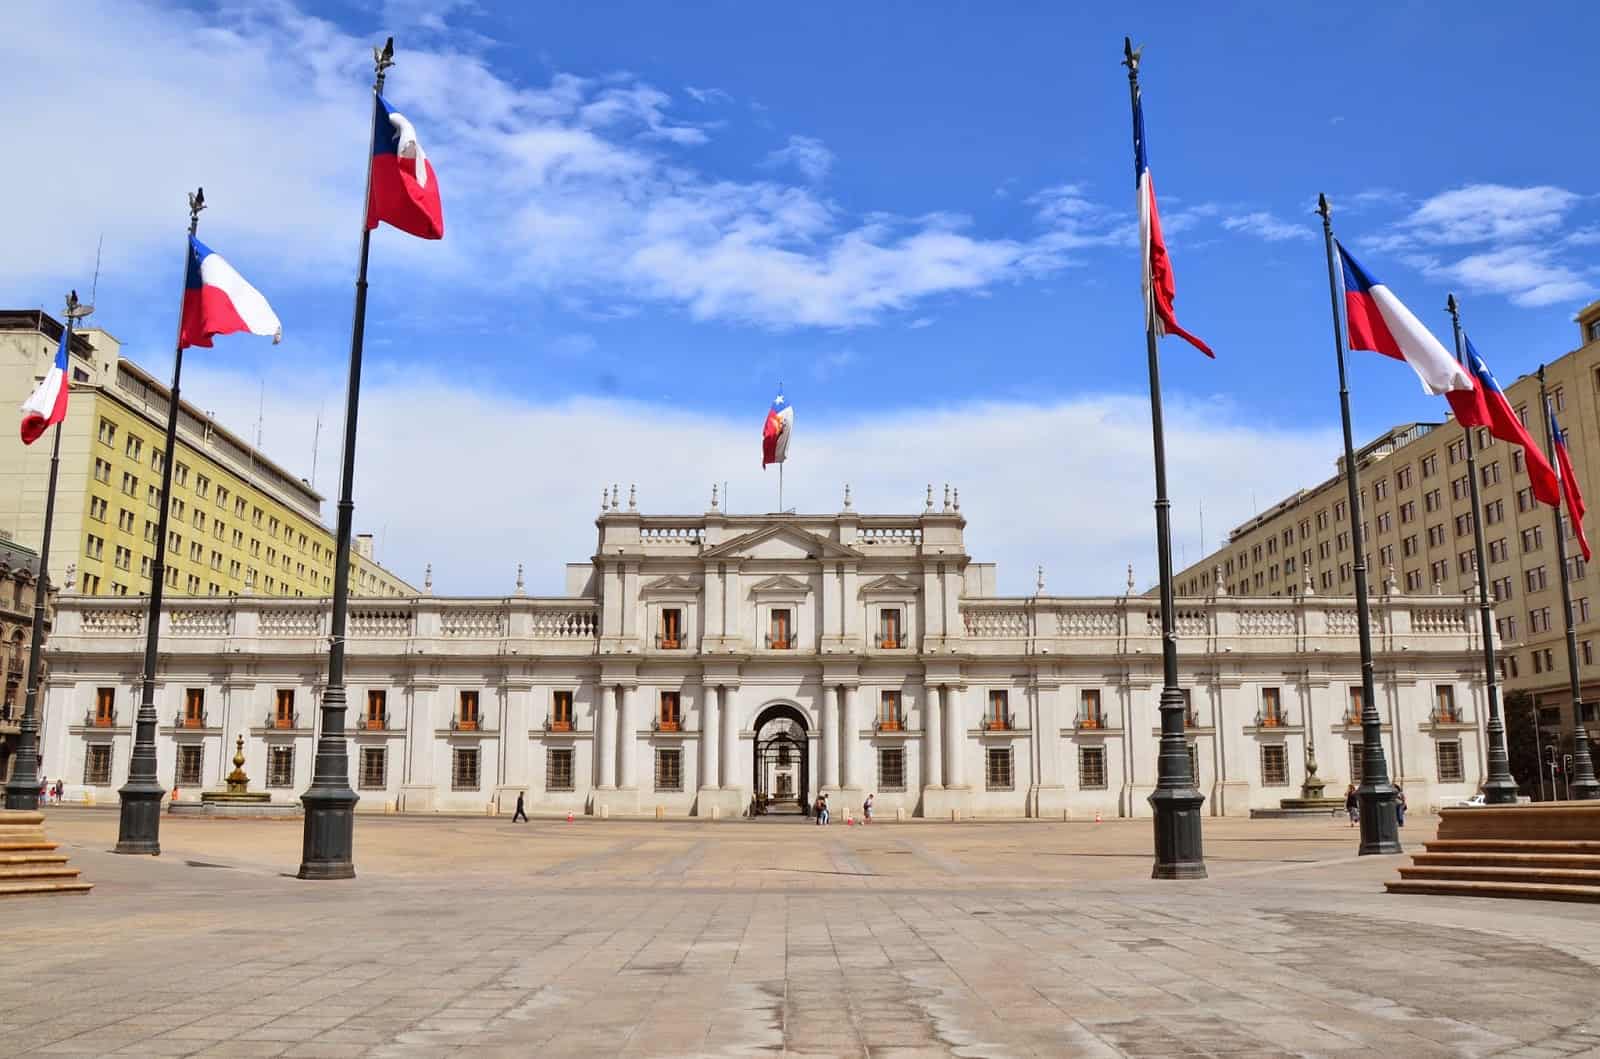 Palacio de La Moneda in Santiago de Chile